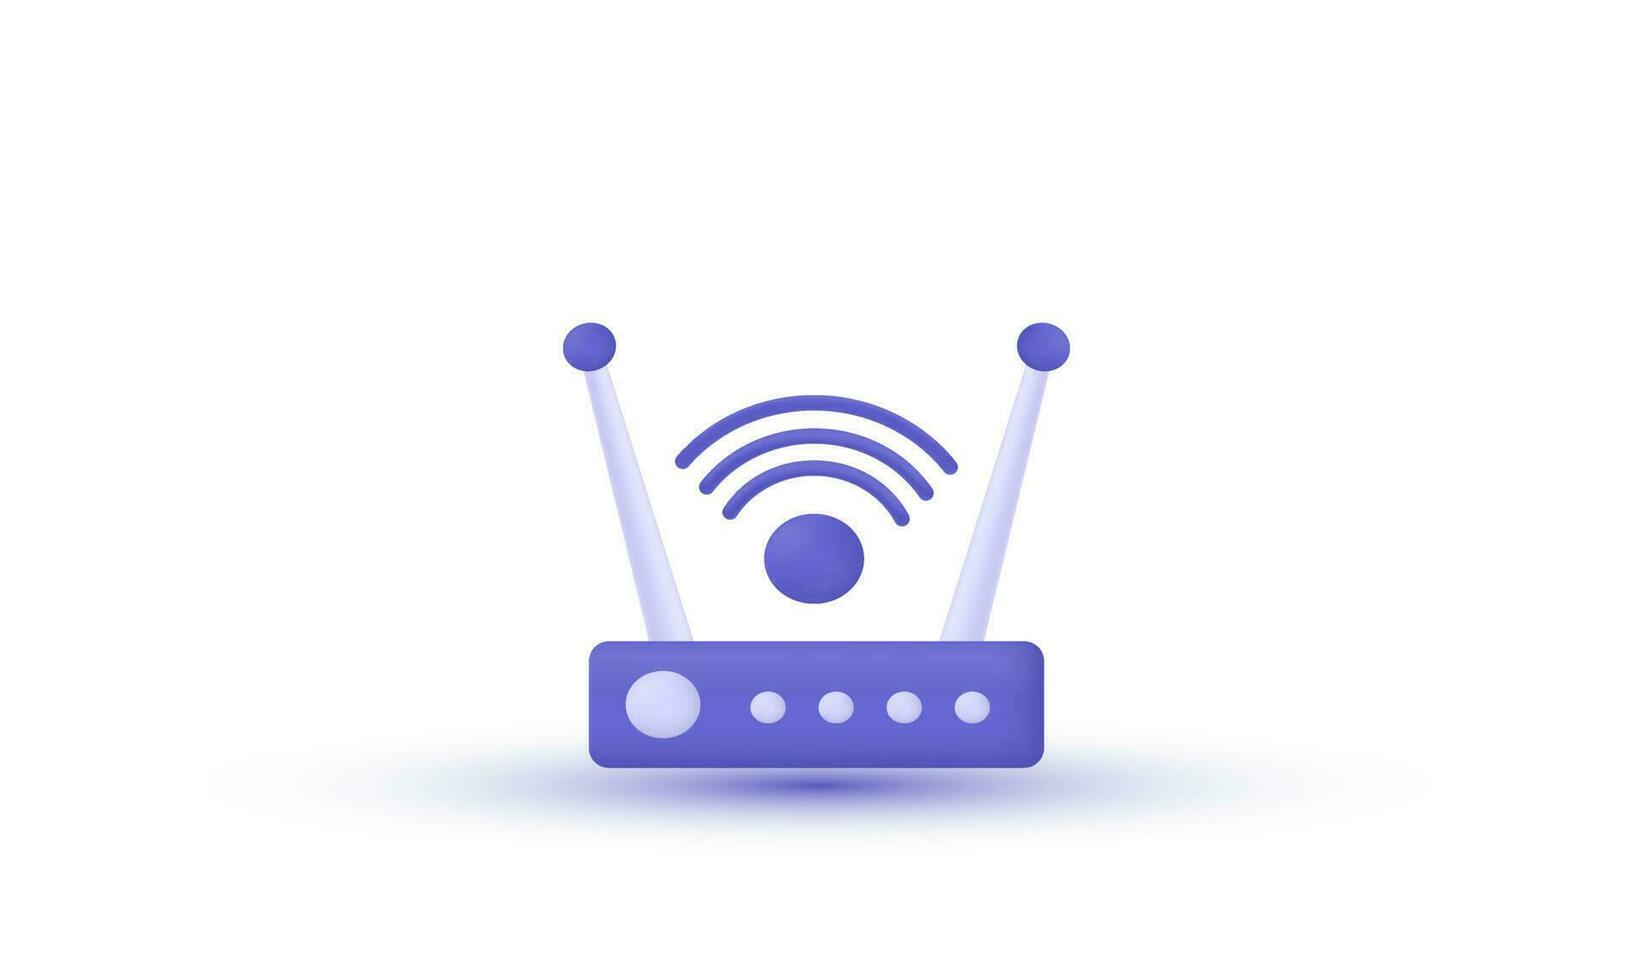 3d realista vetor Internet Wi-fi roteador ilustração na moda ícone moderno estilo objeto símbolos ilustração isolado em fundo